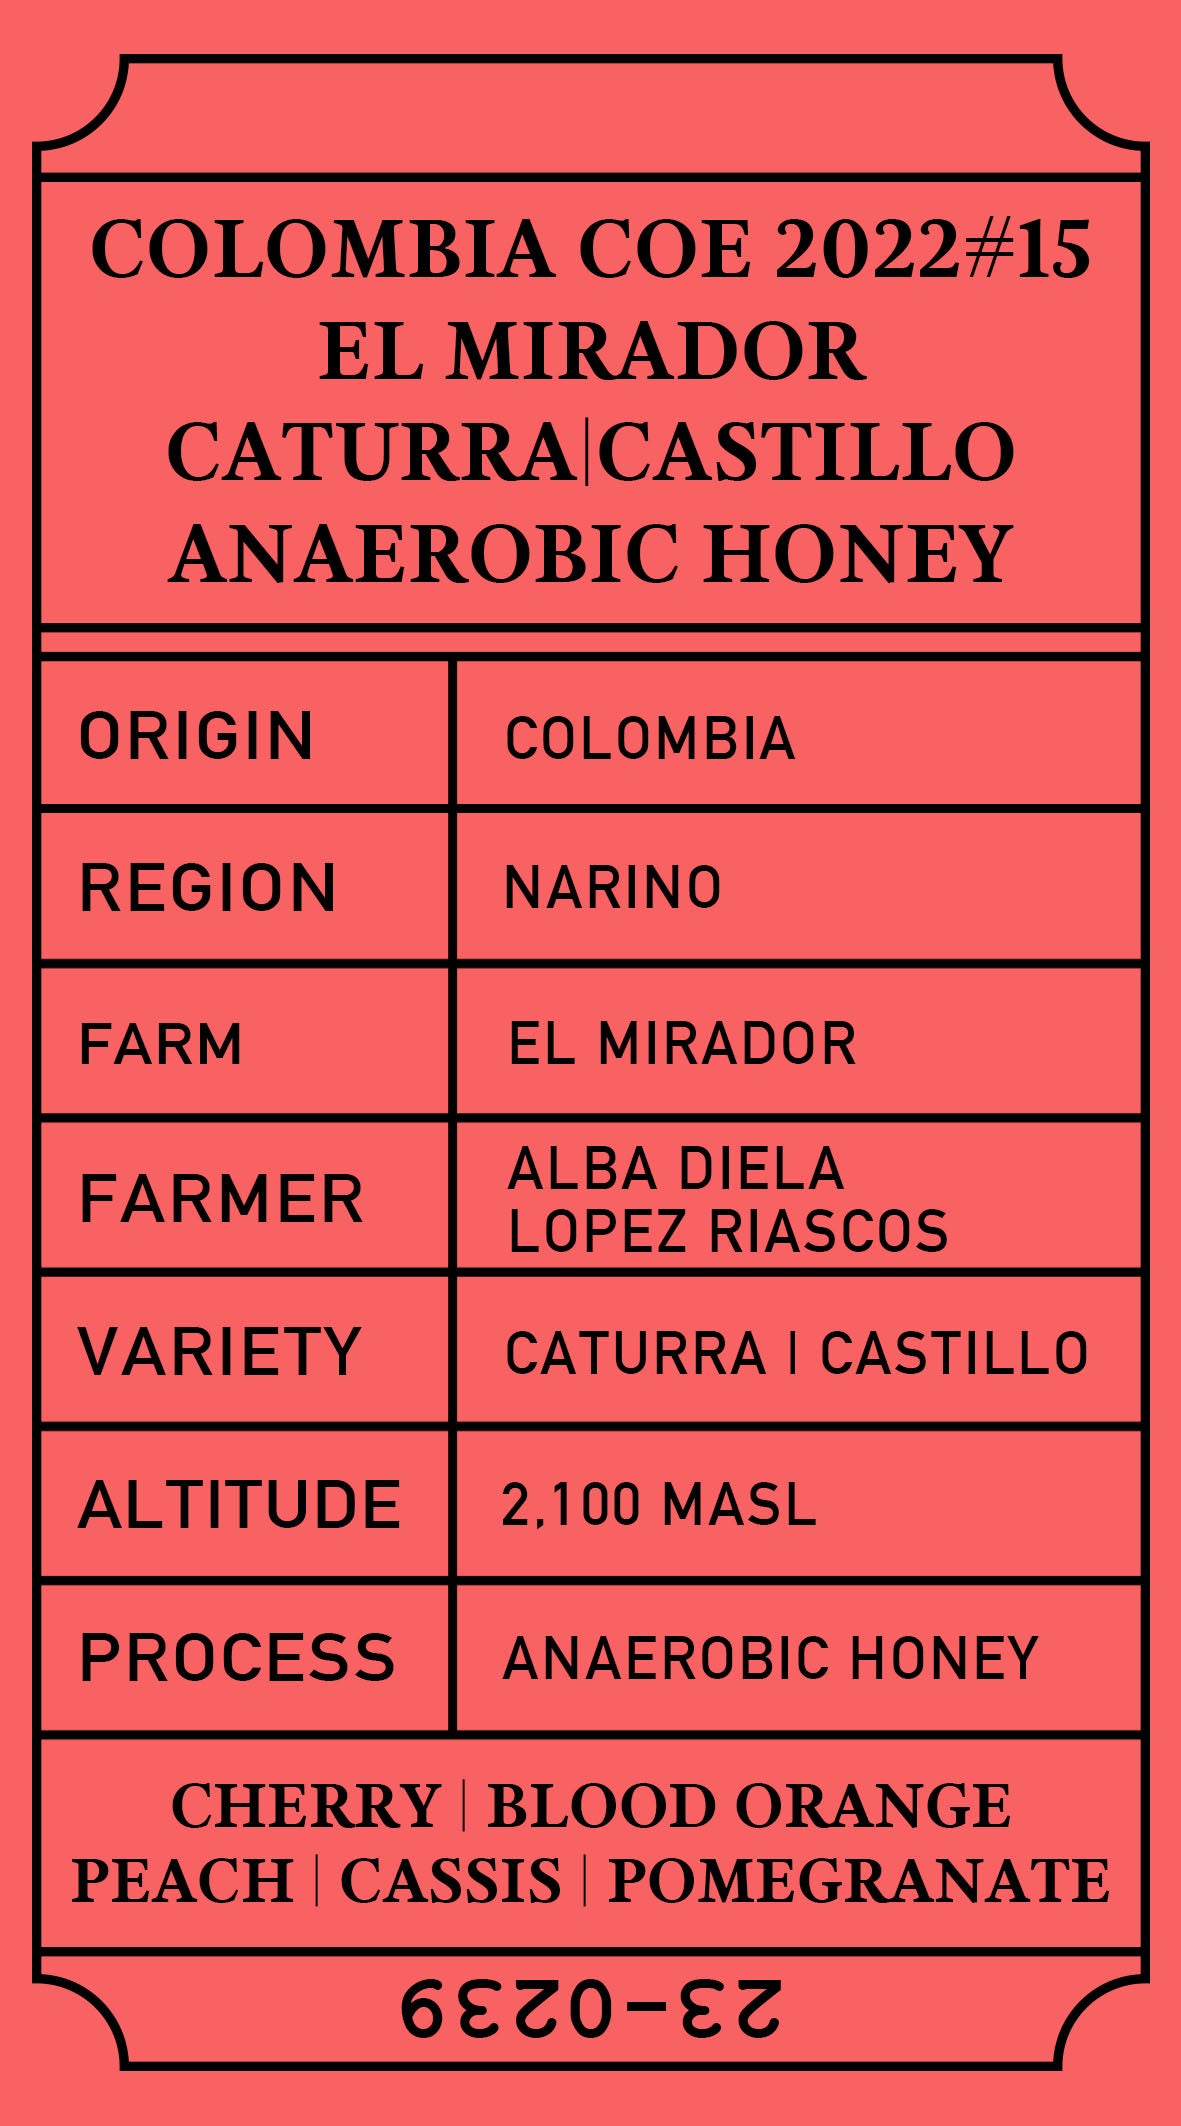 Colombia COE 2022 #15 El Mirador Anaerobic Honey